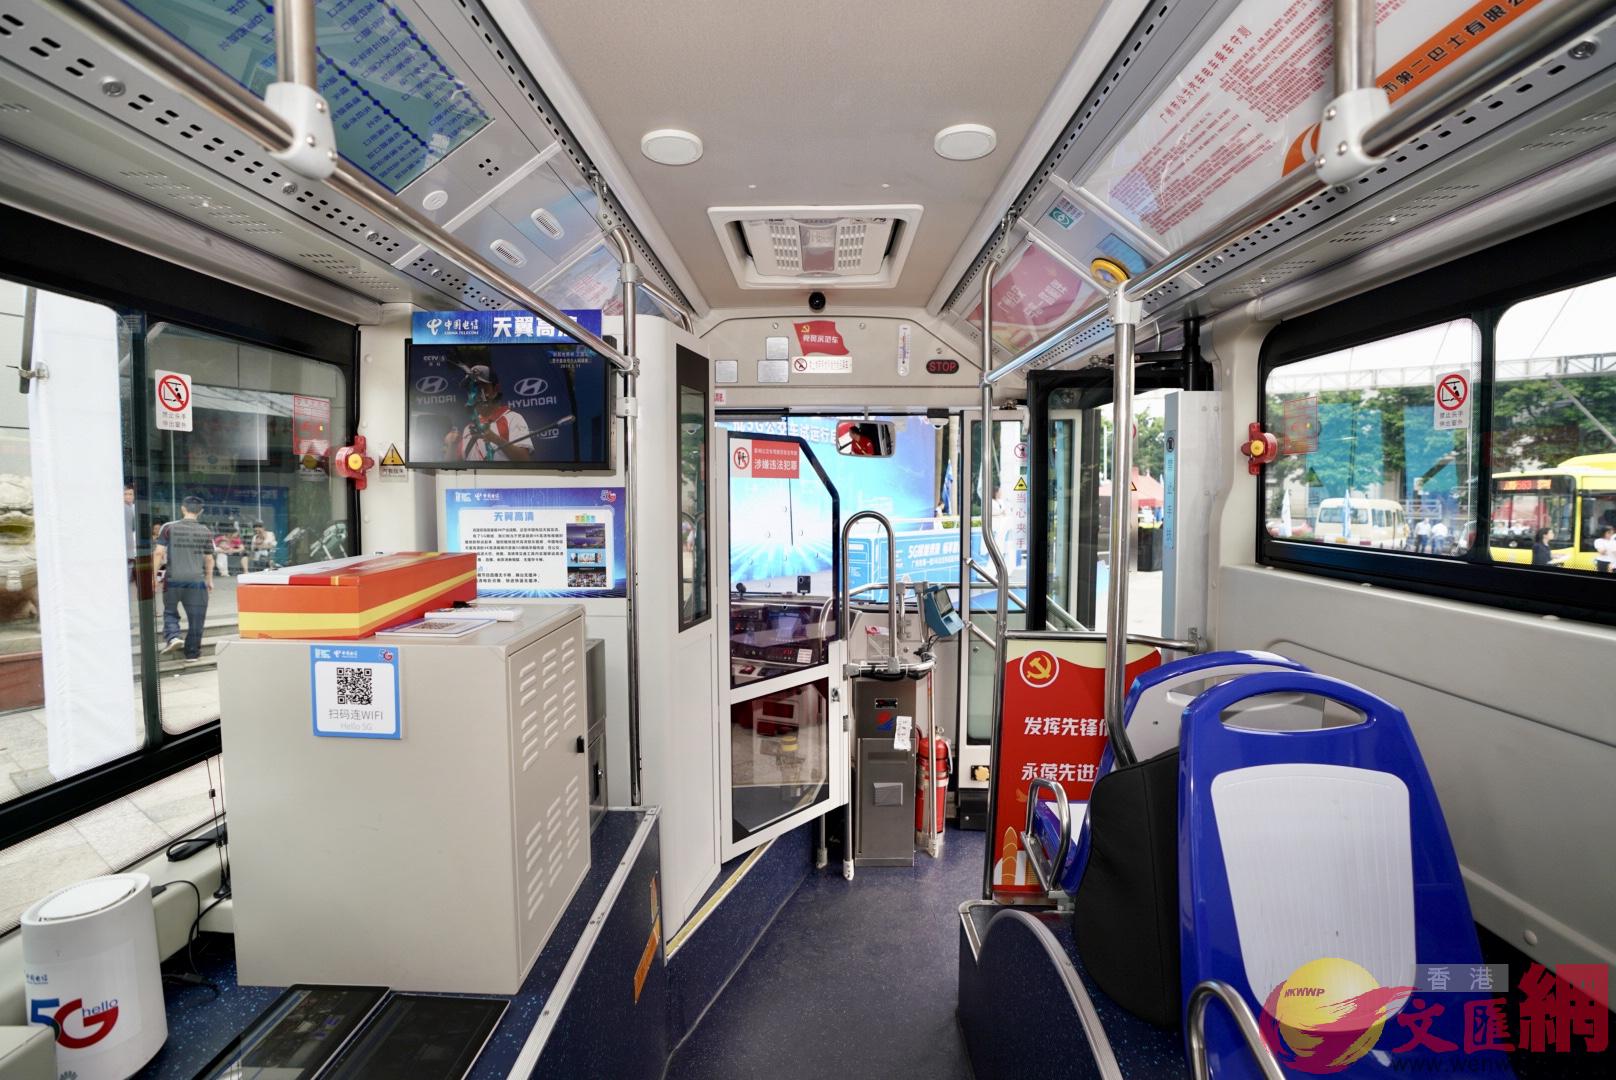 廣州5G公交巴士上安裝的智能調度與視頻錄像一體機A實現全車8路全高清視頻監控]記者 方俊明攝^